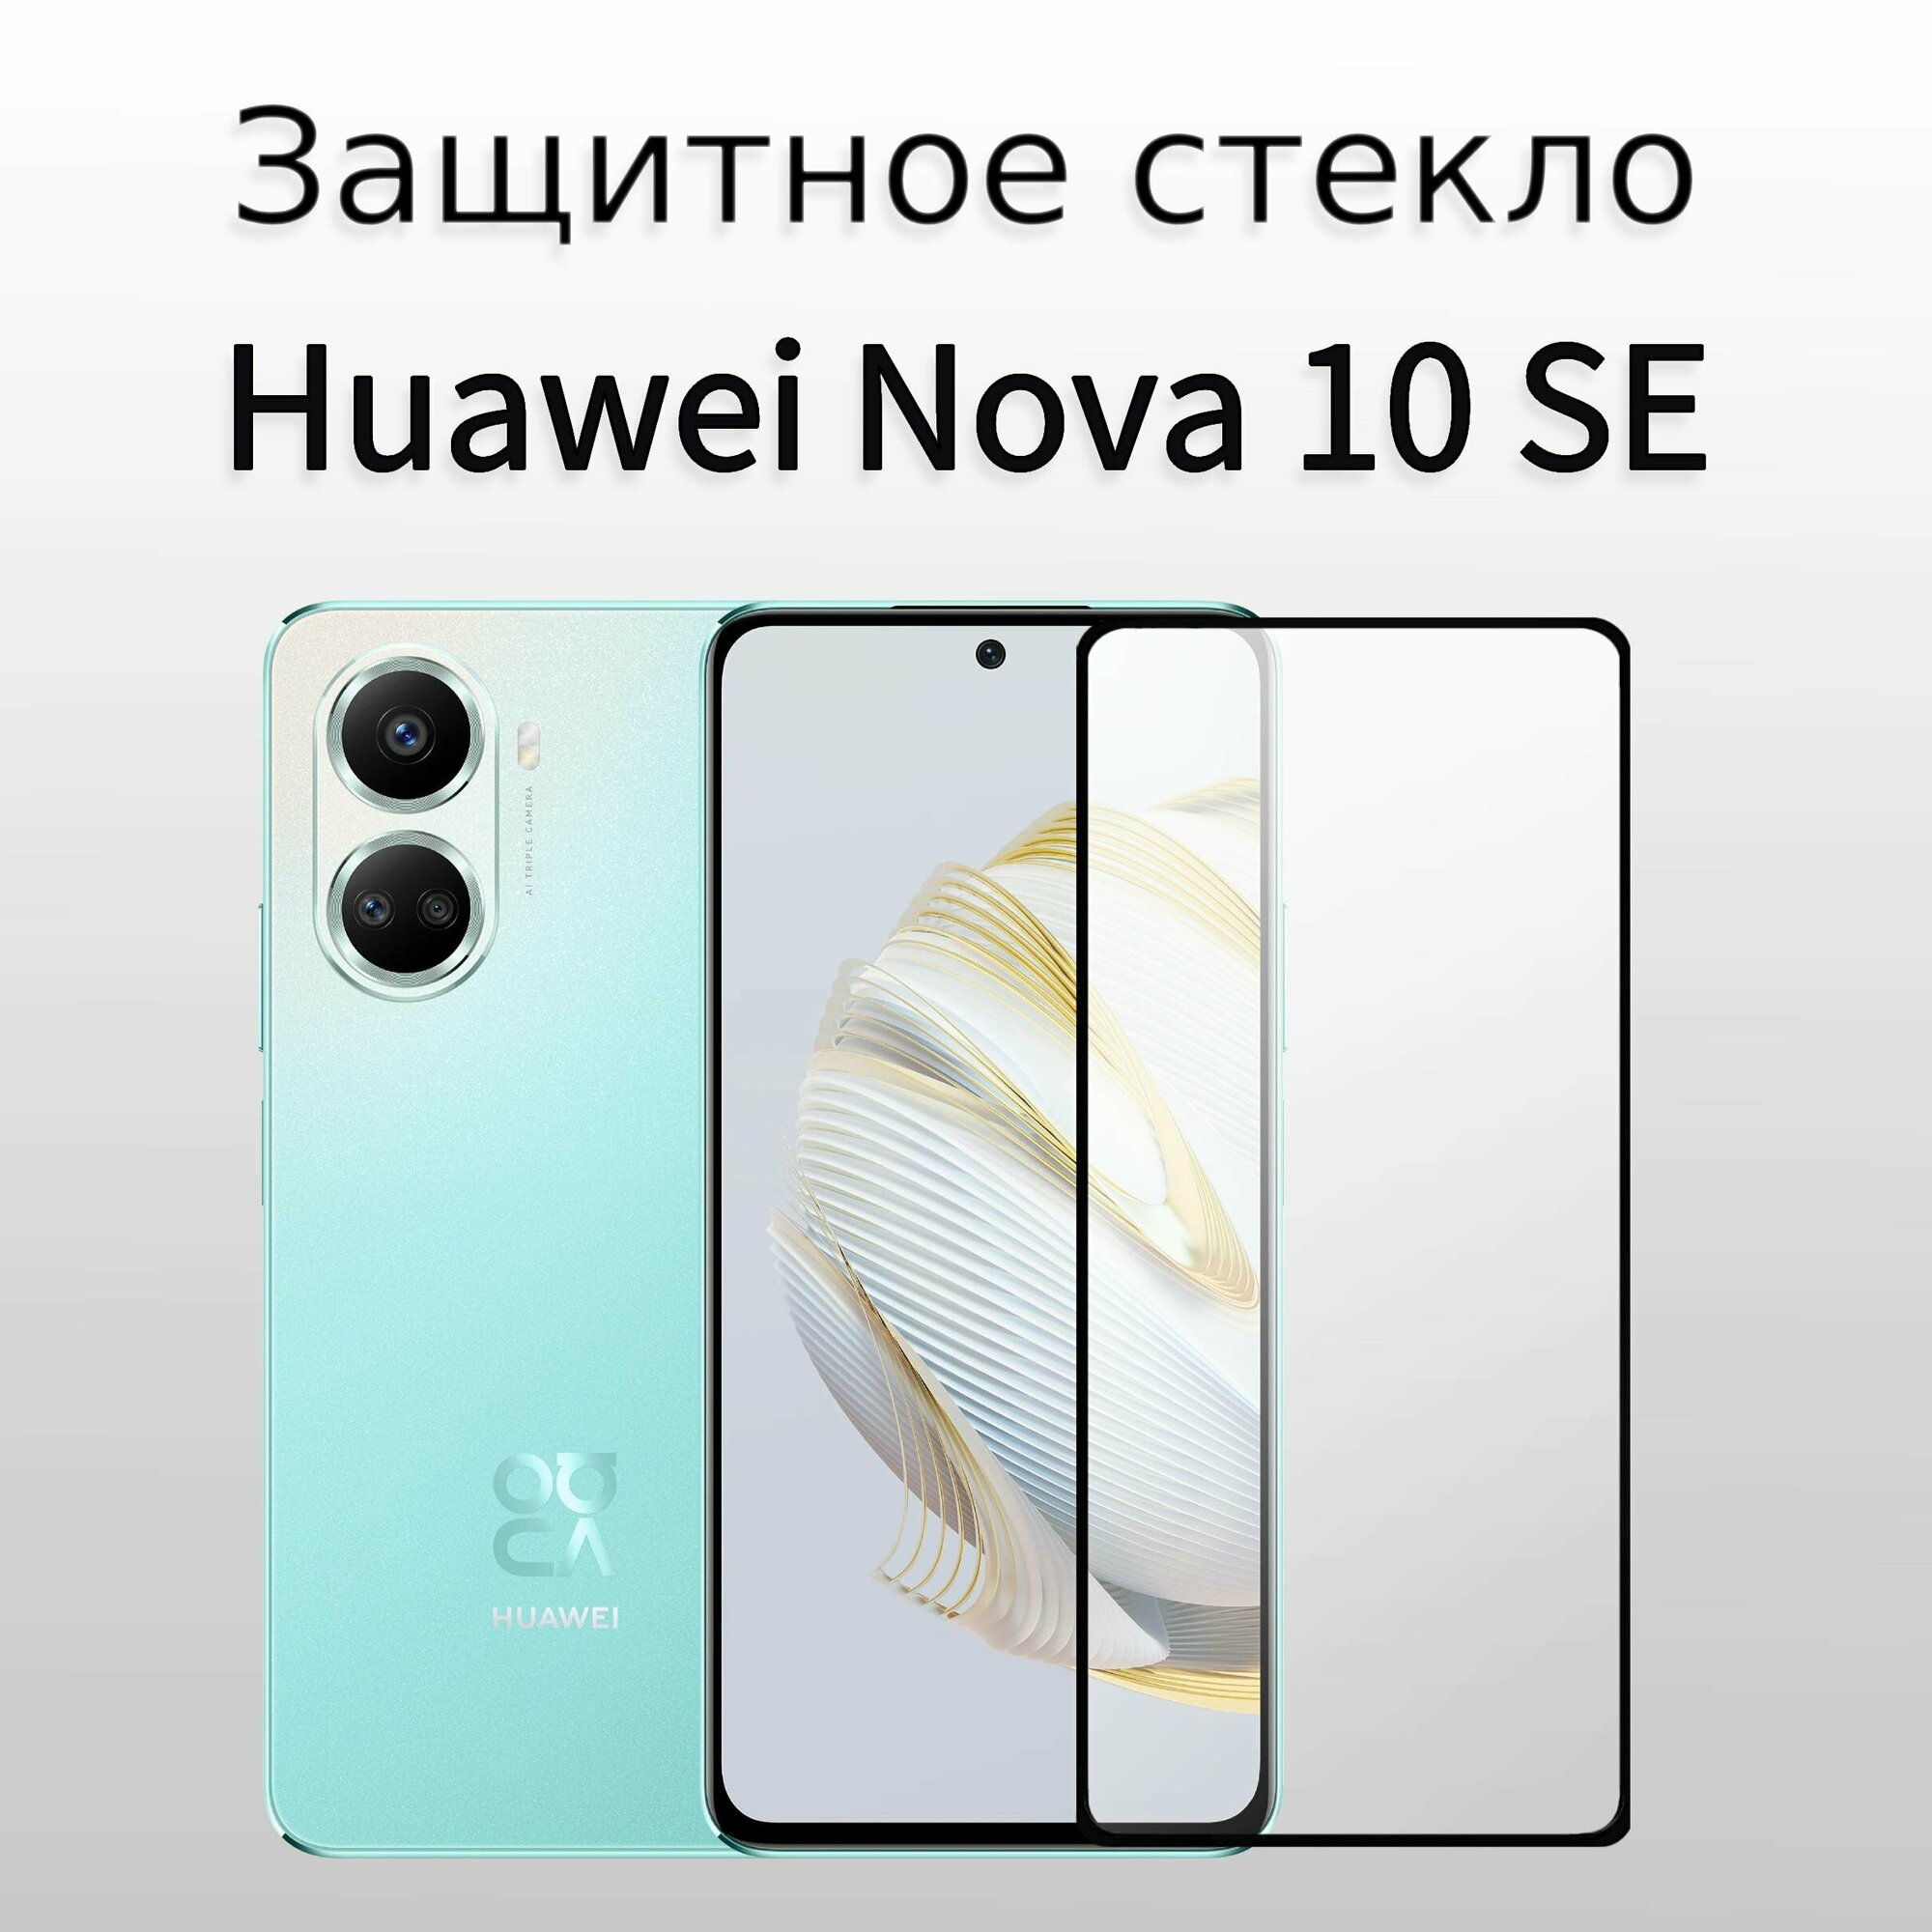 Стекло защитное для Huawei Nova 10 SE